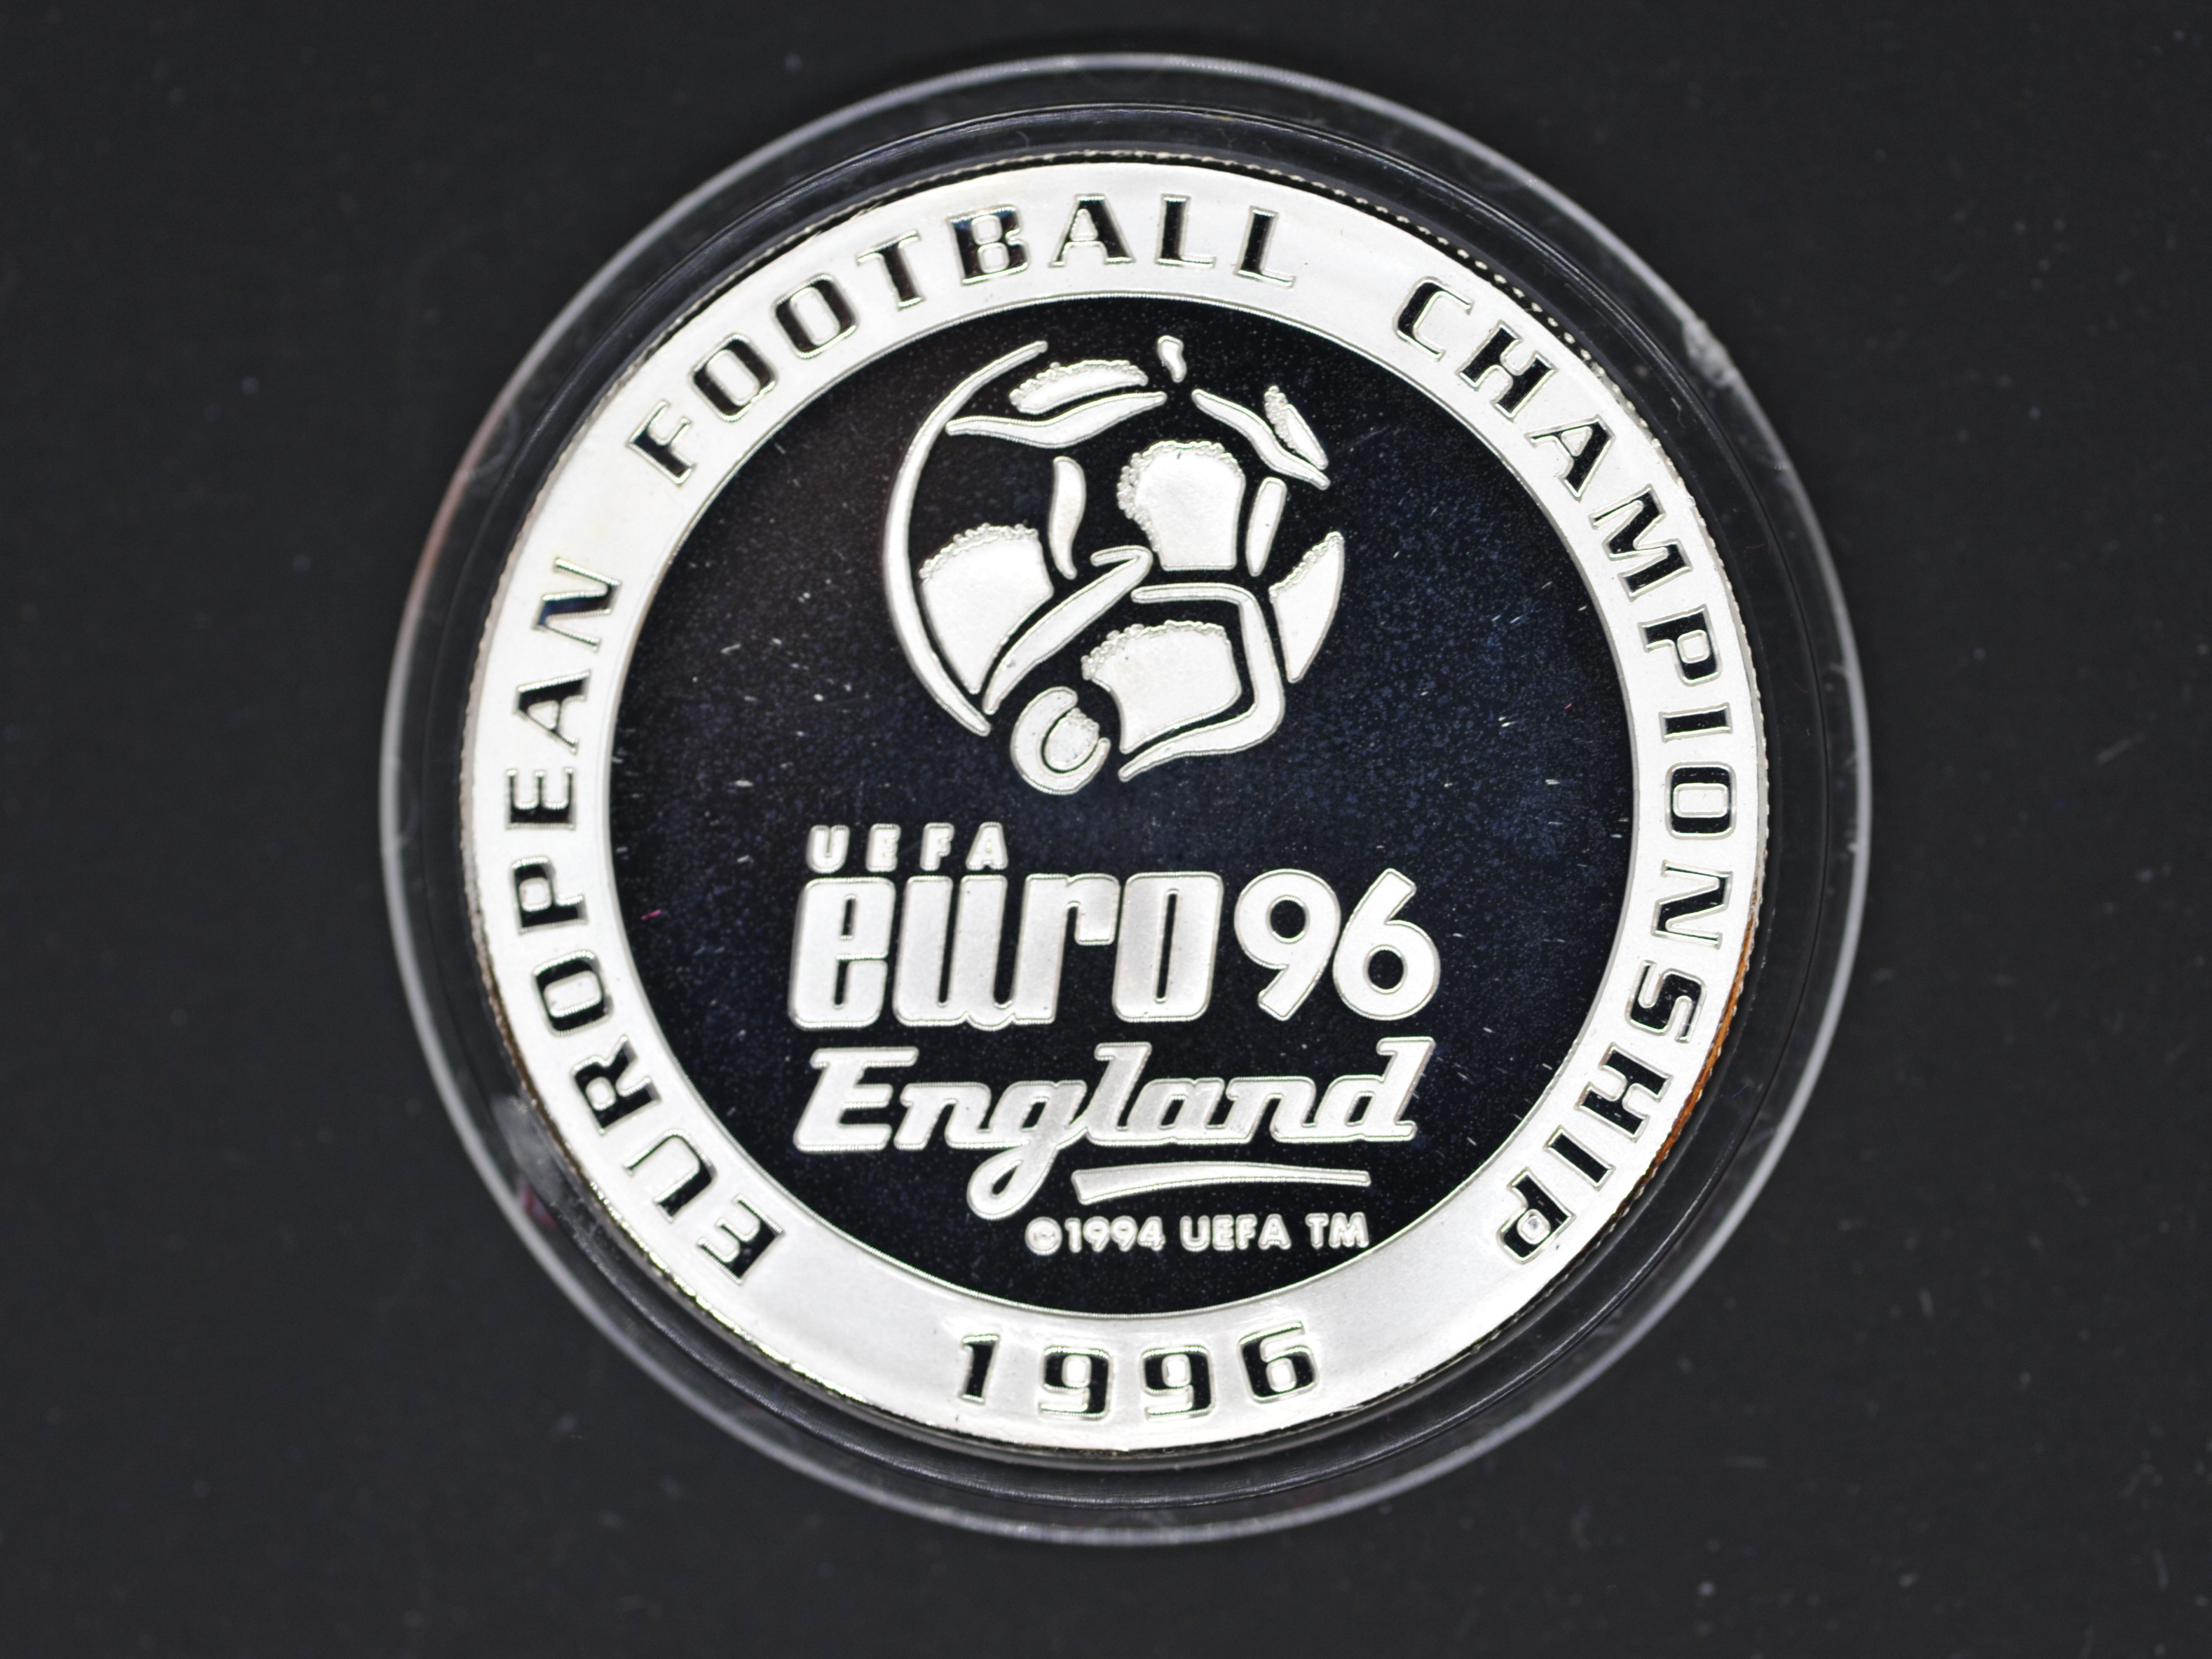 Silver - Euro 96 England - A 1 troy oz (31.1 grams) fine grade . - Image 2 of 2